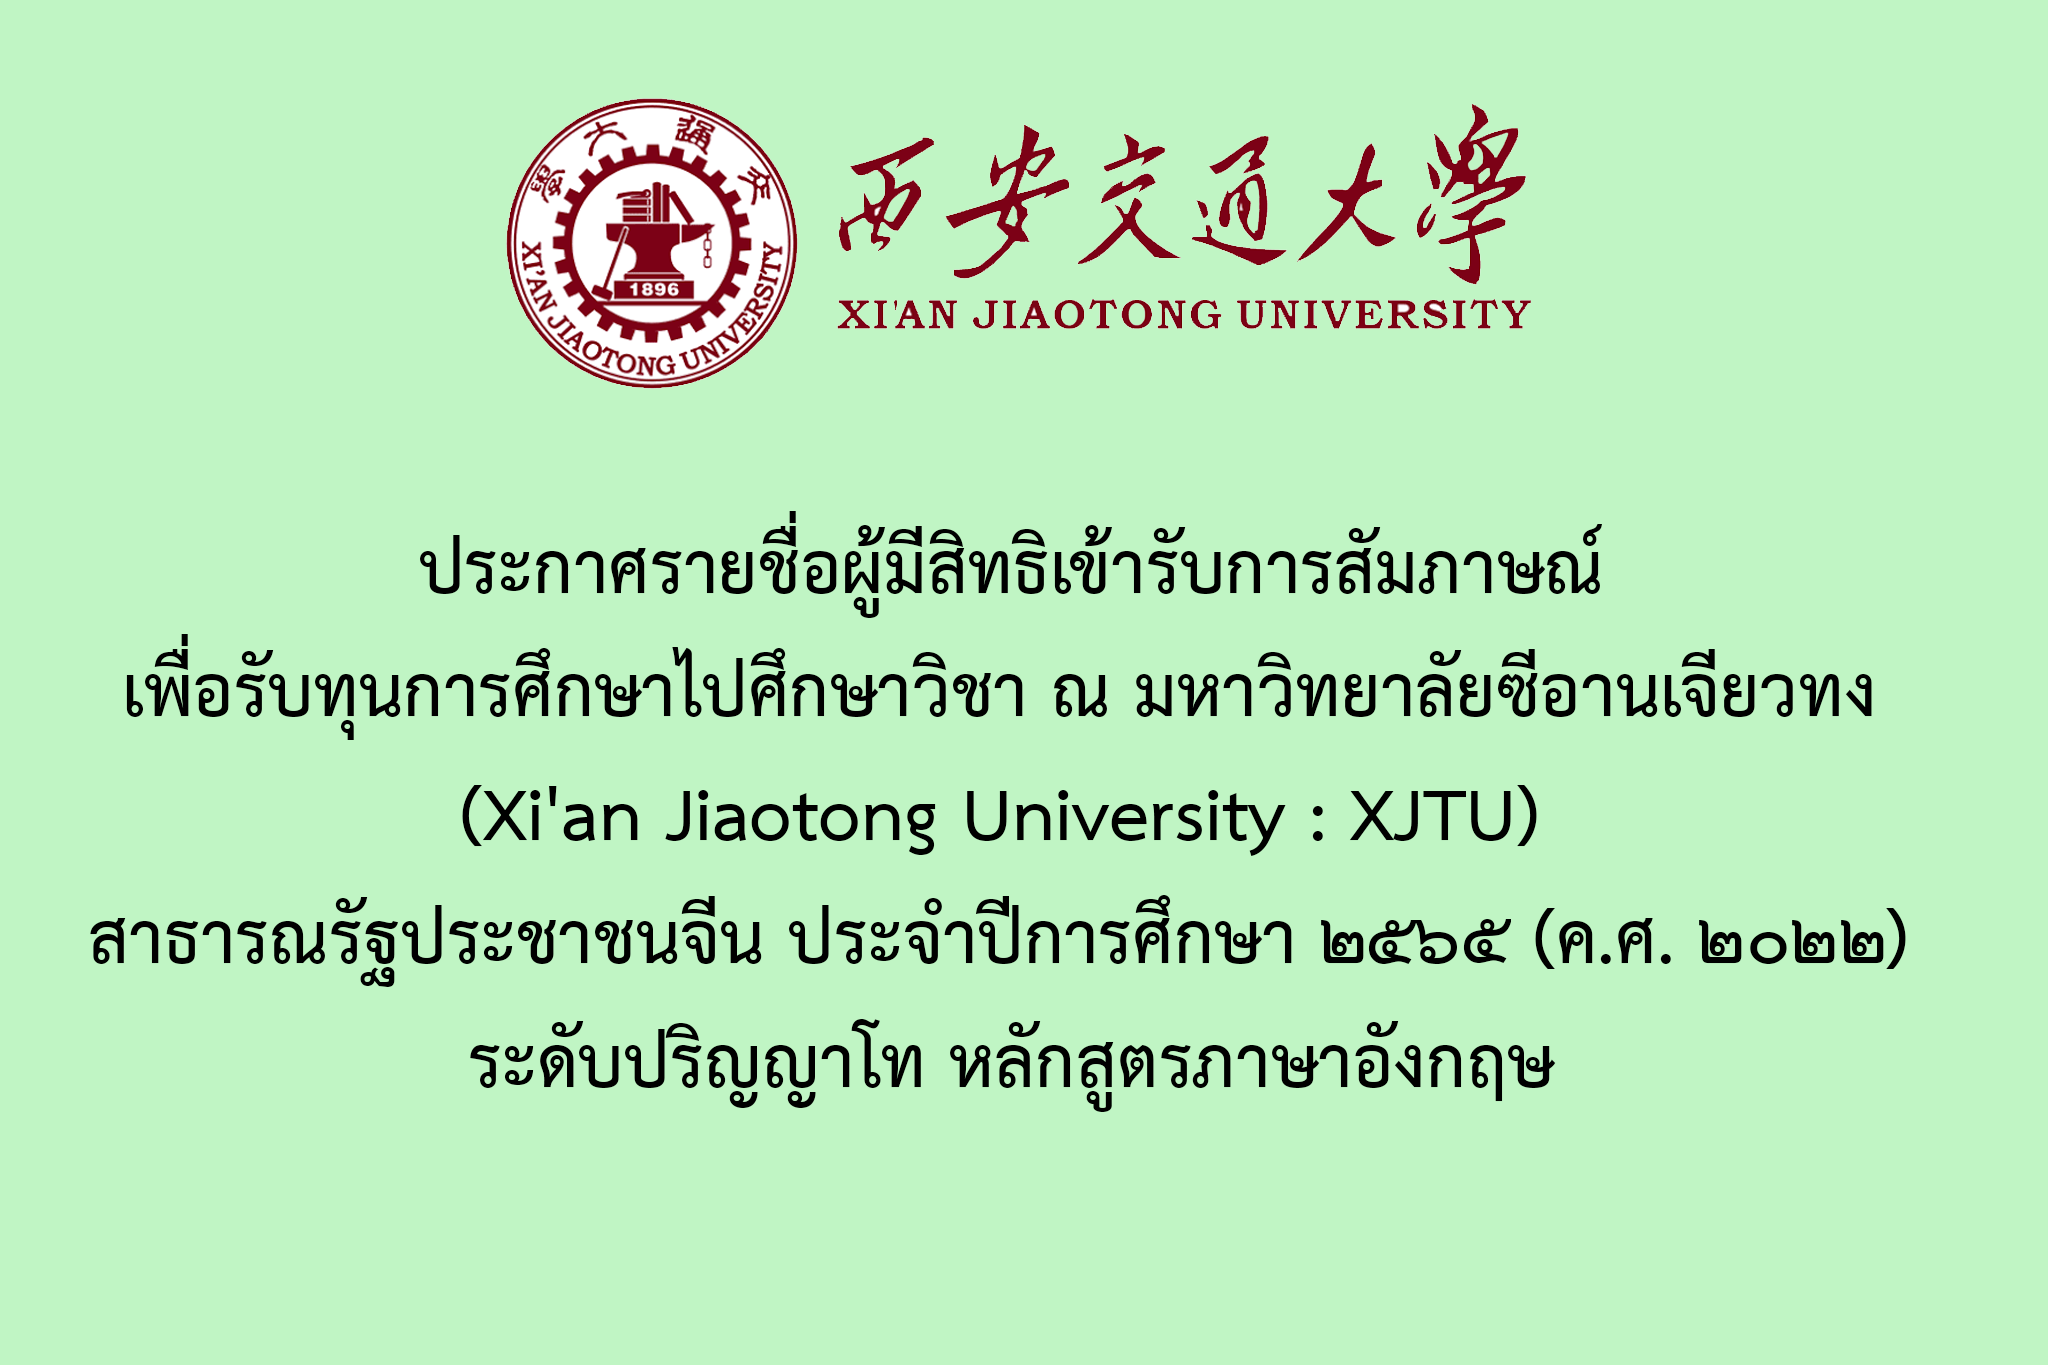 ประกาศรายชื่อผู้มีสิทธิเข้ารับการสัมภาษณ์เพื่อรับทุนการศึกษาไปศึกษาวิชา ณ มหาวิทยาลัยซีอานเจียวทง (Xi'an Jiaotong University : XJTU) สาธารณรัฐประชาชนจีน ประจำปีการศึกษา ๒๕๖๕ (ค.ศ. ๒๐๒๒) ระดับปริญญาโท หลักสูตรภาษาอังกฤษ